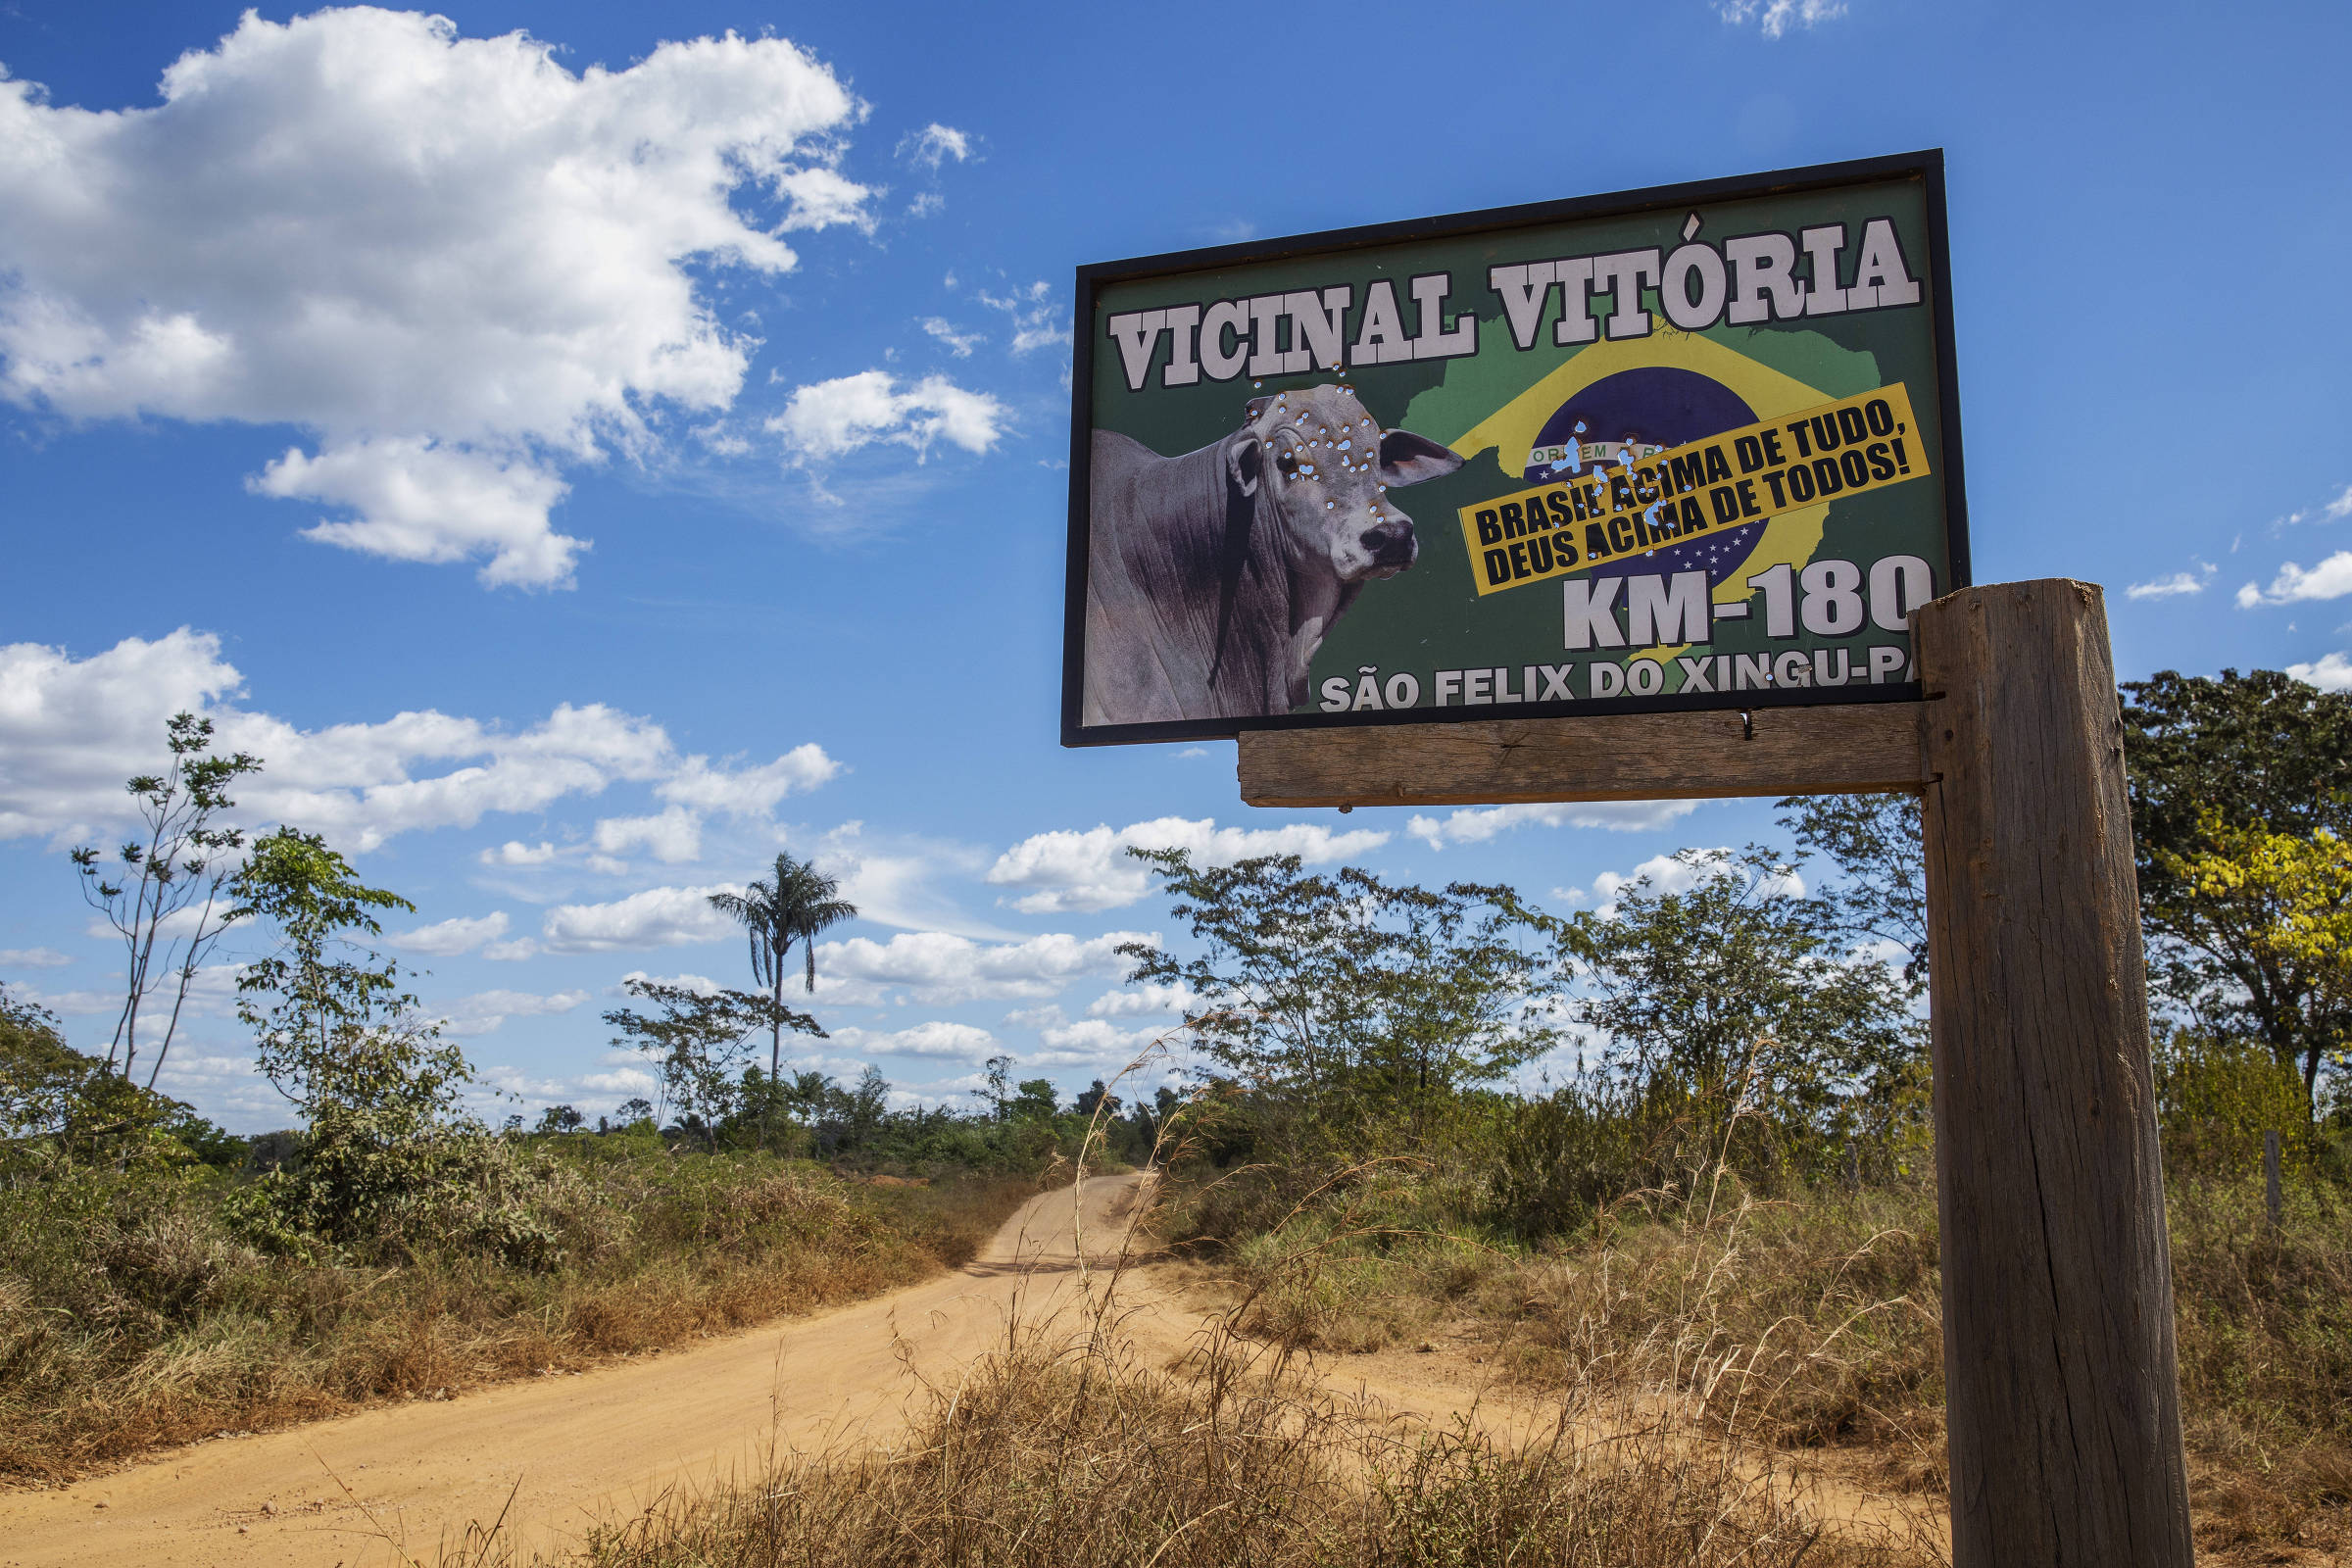 Placa indicando uma estrada vicinal dentro da Terra Indígena Apyterewa, no Pará, com marcas de tiro e um adesivo de apoio ao presidente Jair Bolsonaro